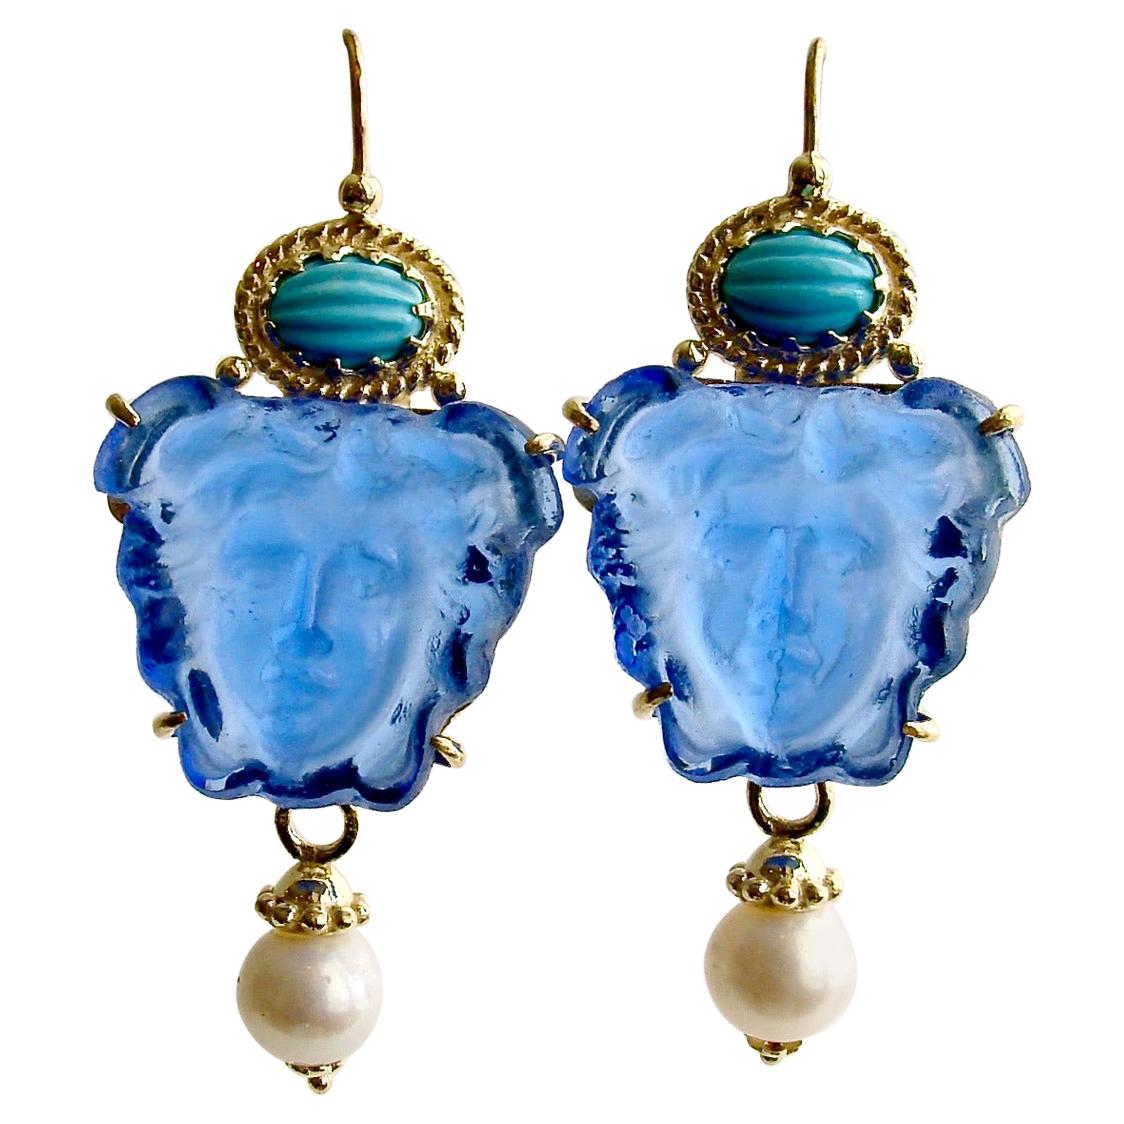 Venetian Glass Intaglio/Cameo Sleeping Beauty Turquoise Earrings